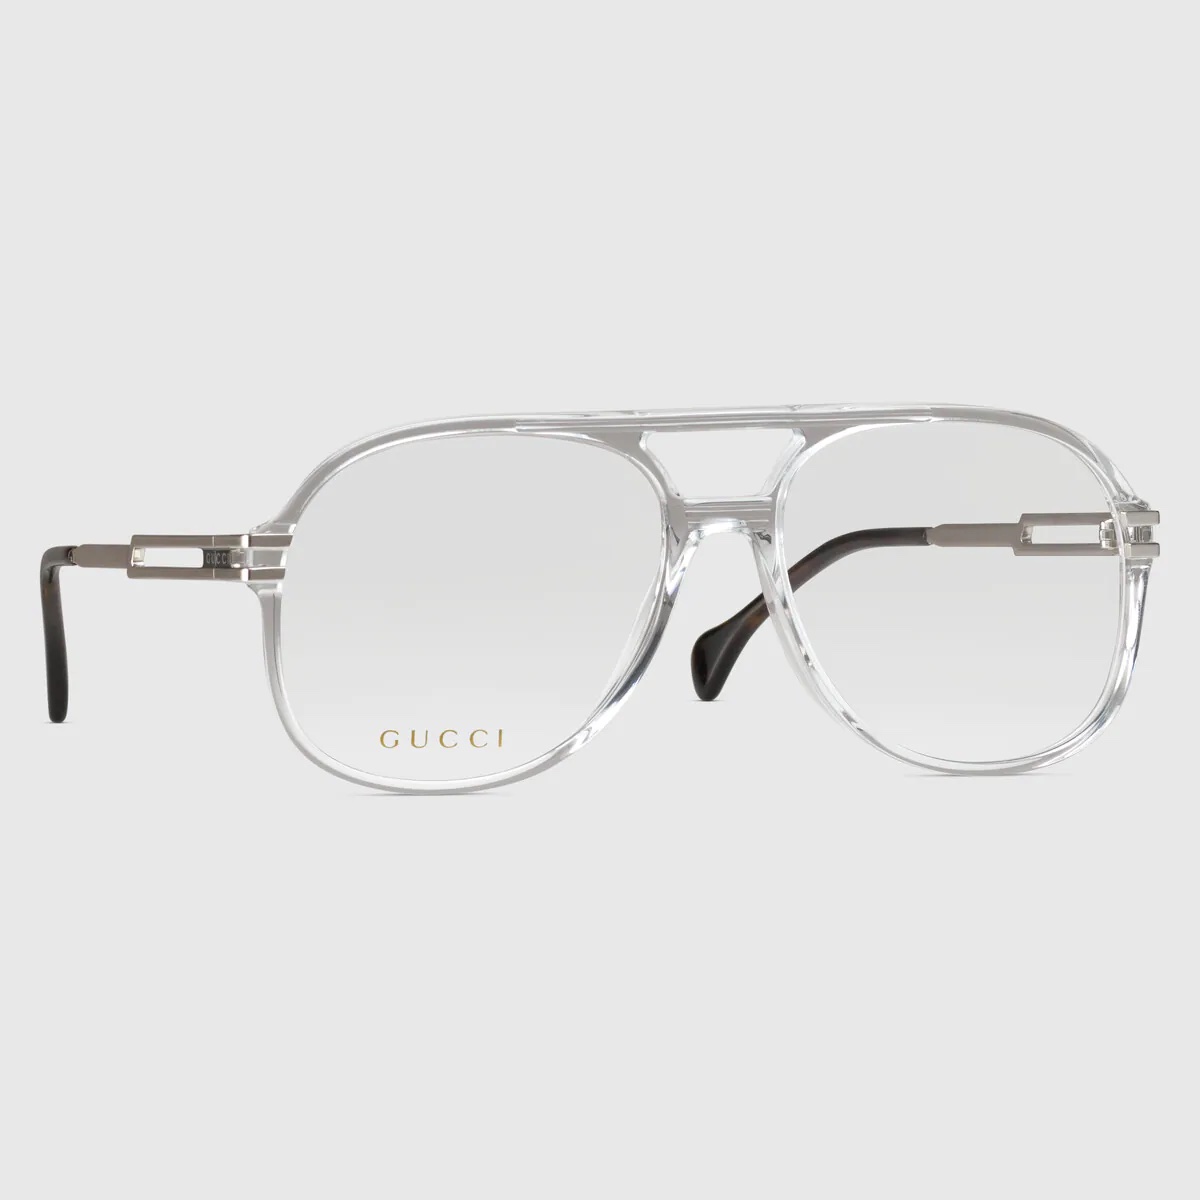 gucci eyewear in kerala